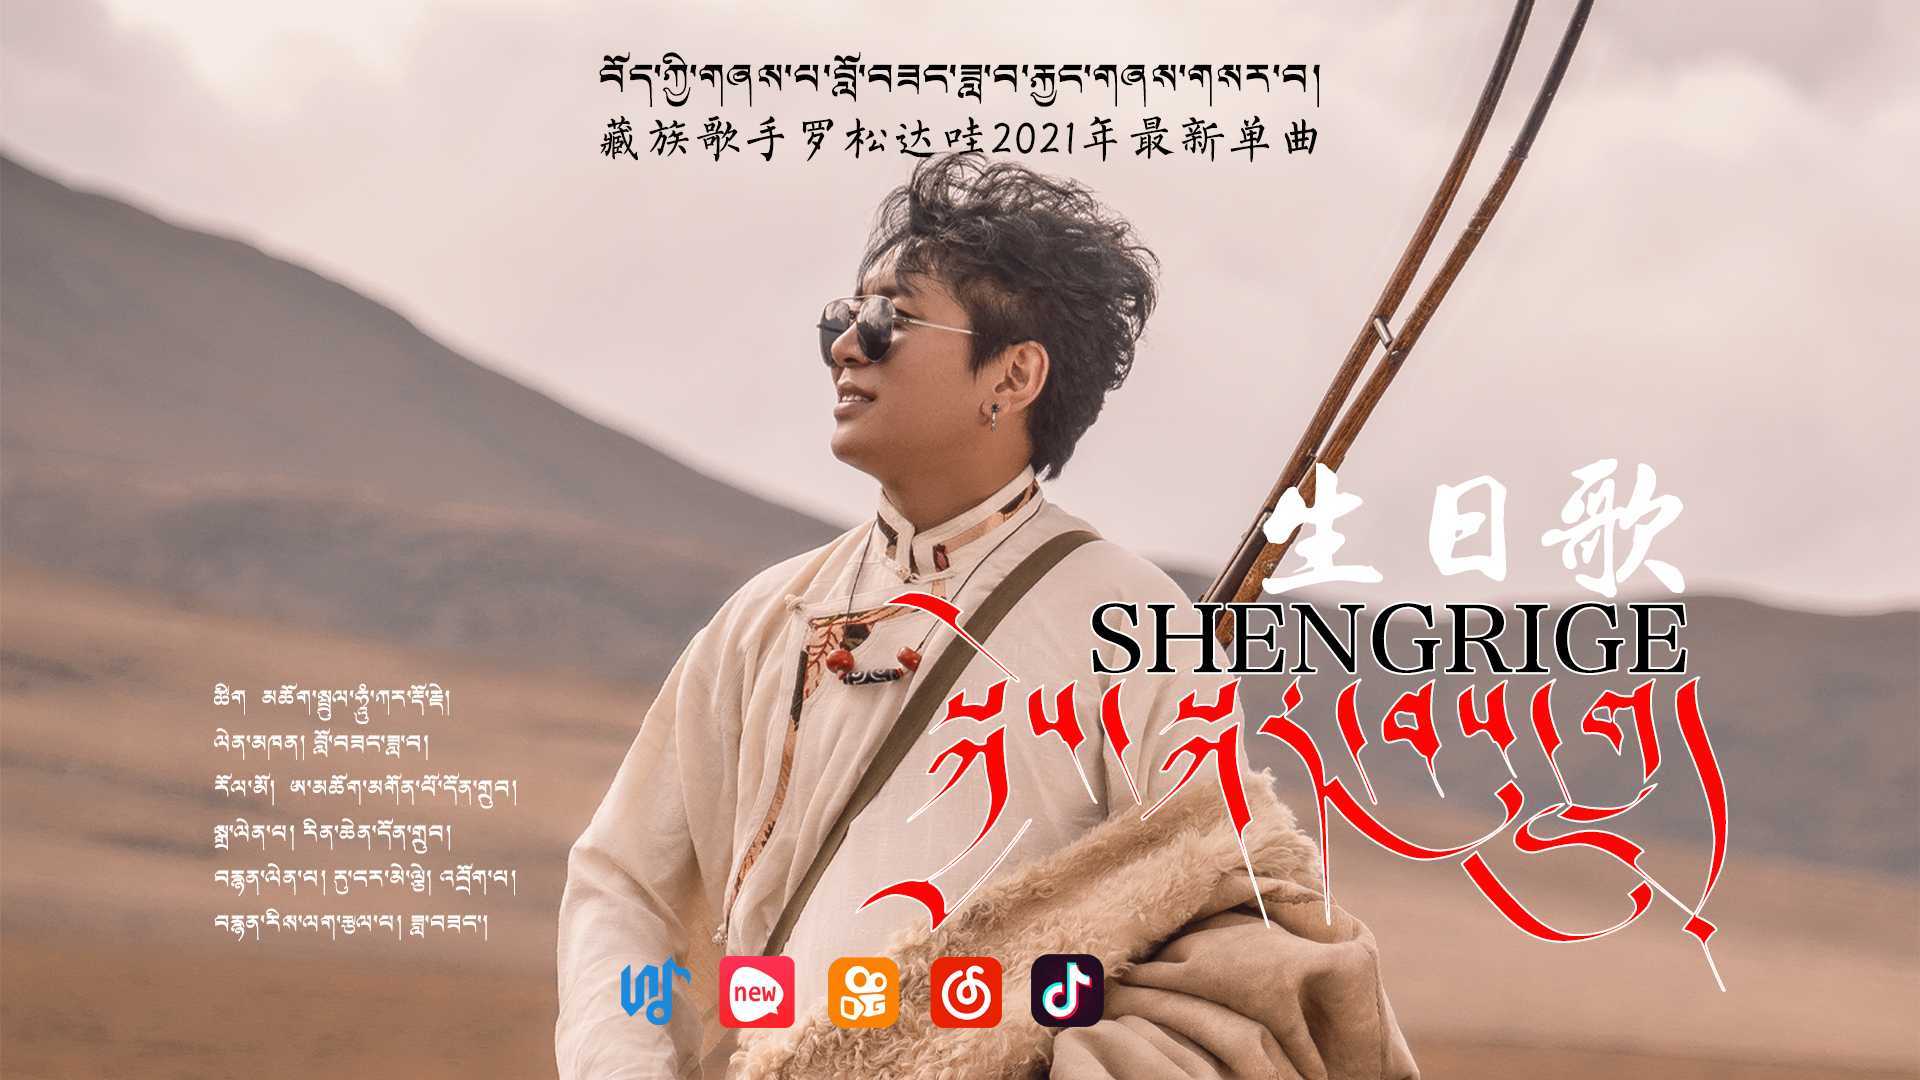 藏族歌手罗松达哇2021年最新单曲